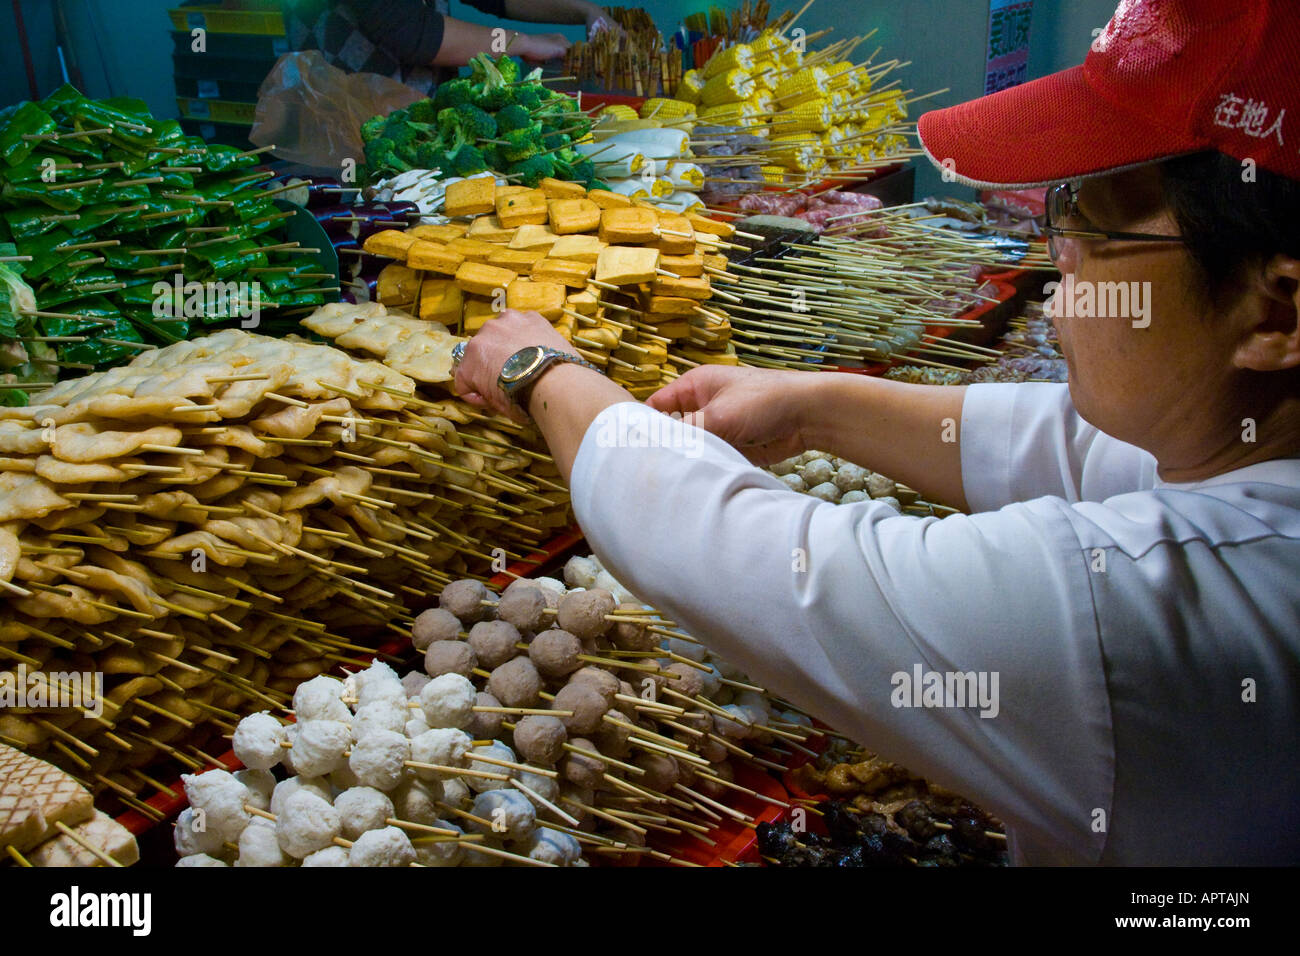 La viande sur un bâton à un fournisseur d'aliments de rue dans un inTaipei marché Shi Lin Taiwan Banque D'Images